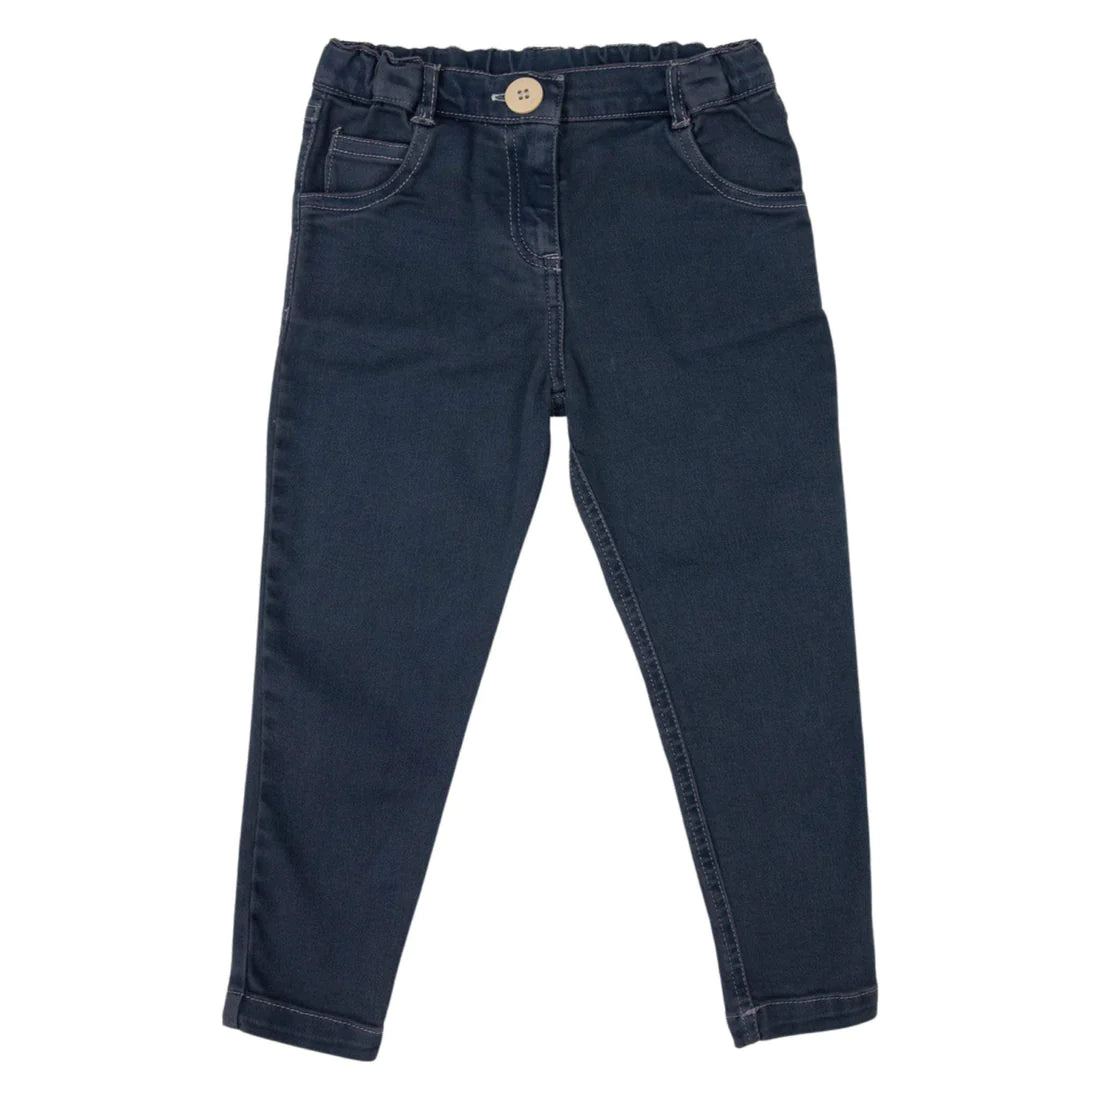 Korango Stretch Jeans - Charcoal